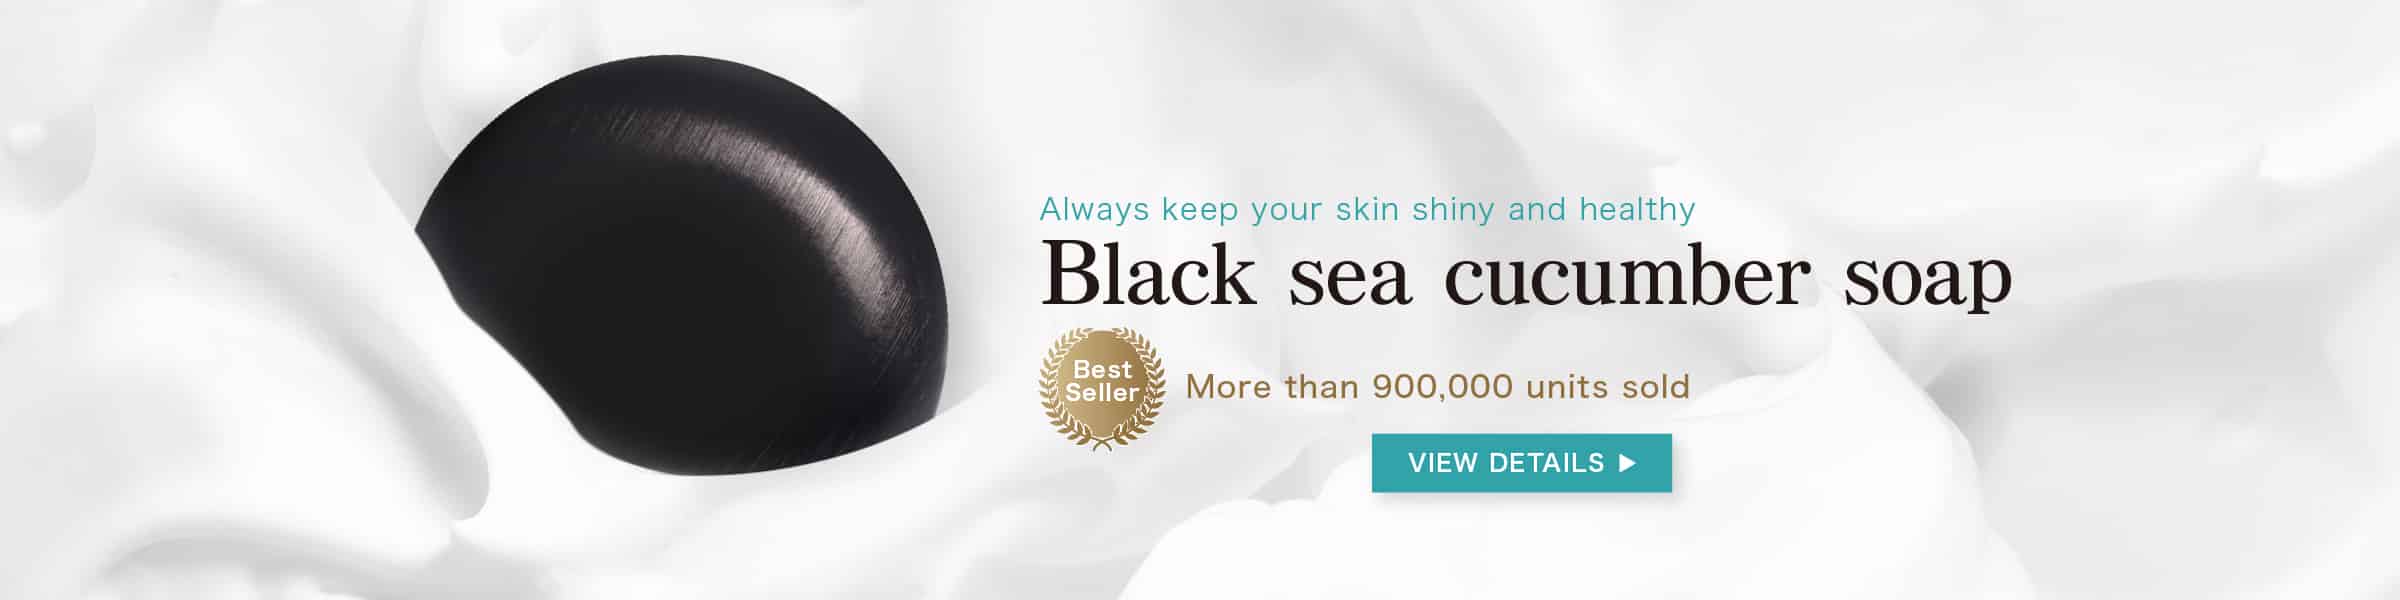 Black sea cucumber soap